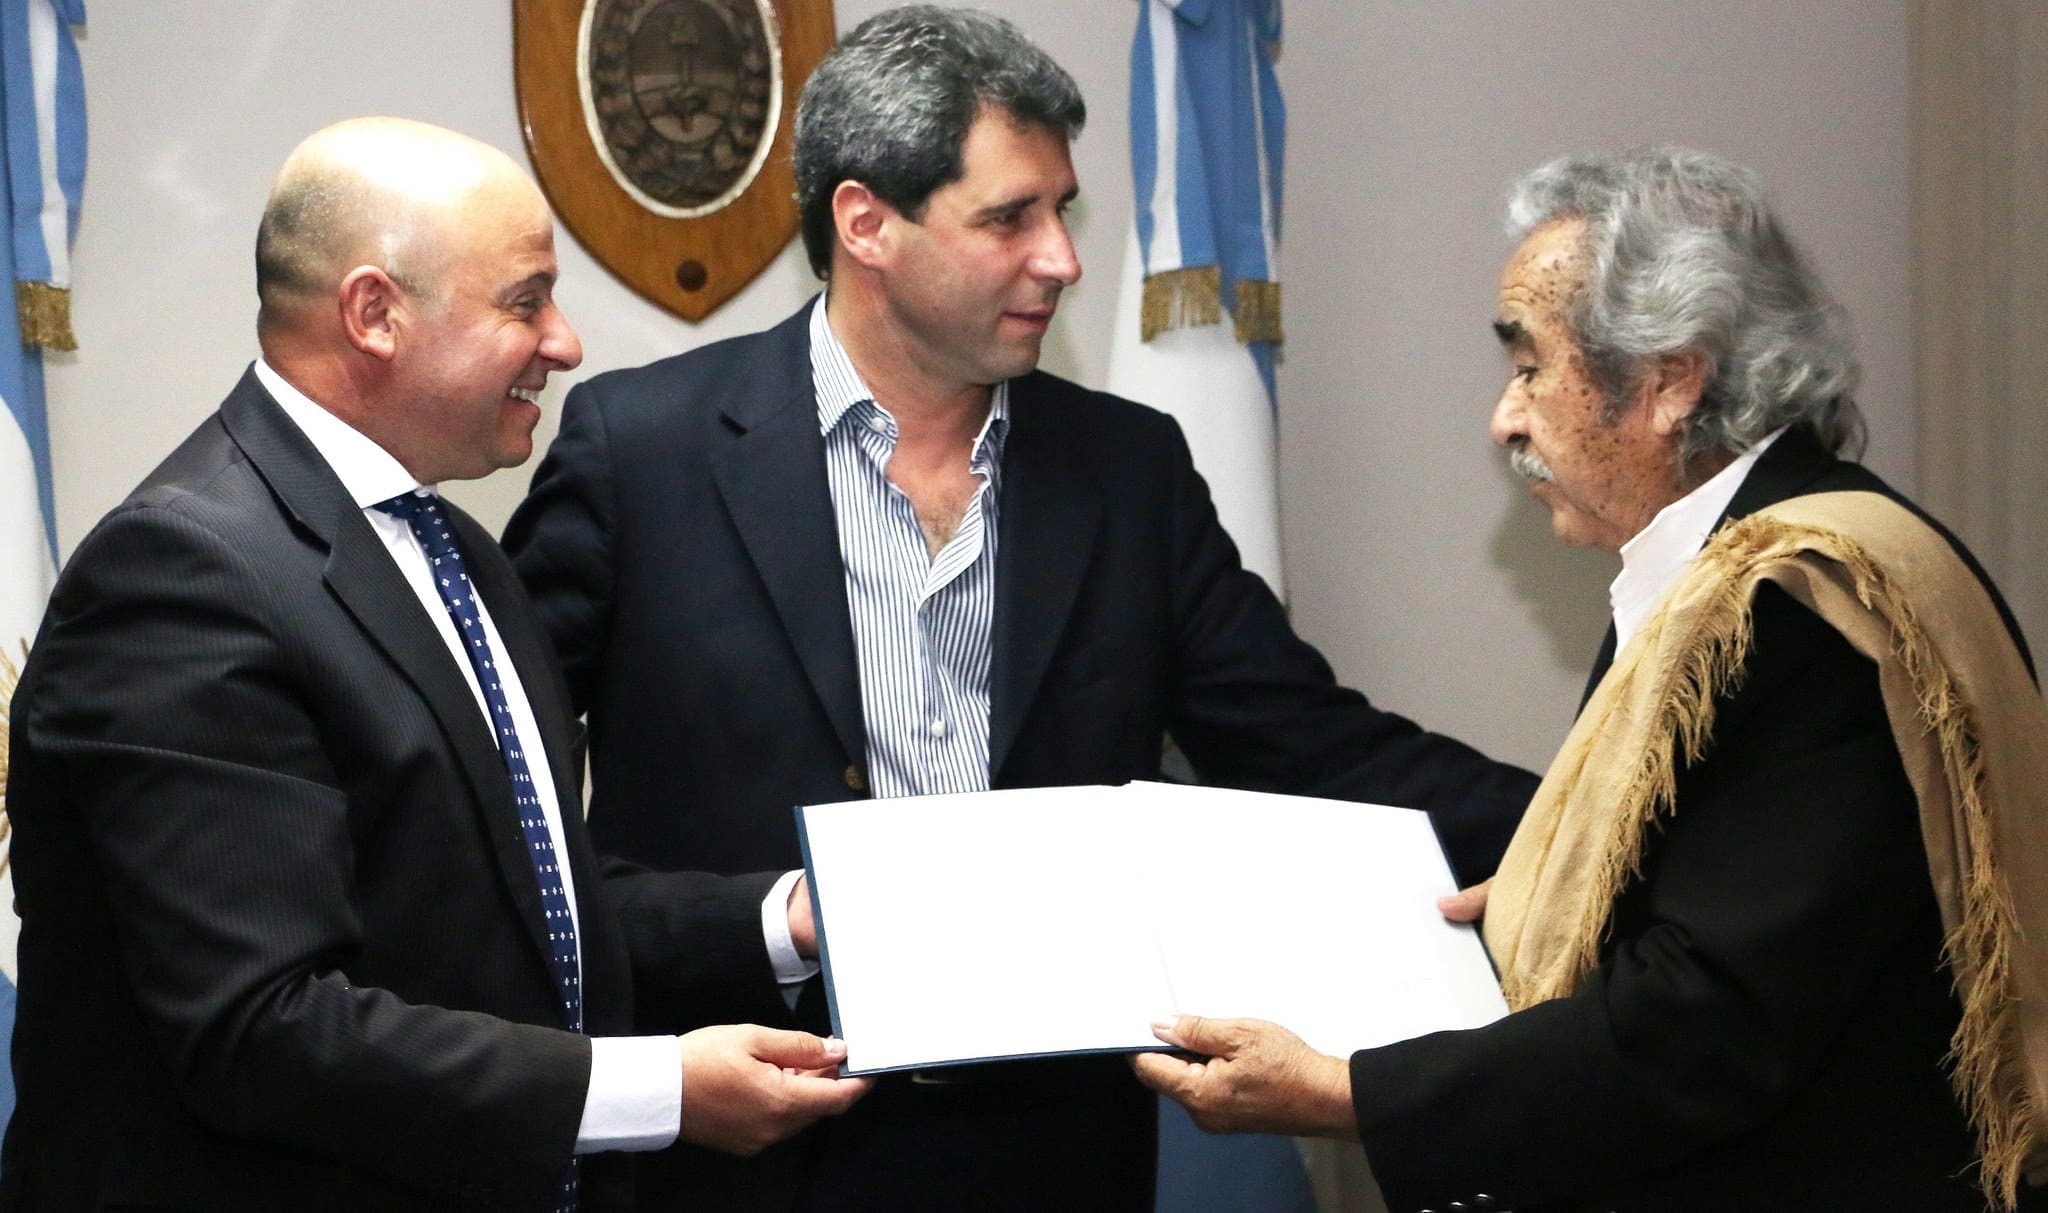 El vicegobernador Sergio Uñac y el diputado Pablo García Nieto hacen entrega de una resolución de la Legislatura provincial, al creador de "Alero Huarpe", Jorge Darío Bence. 